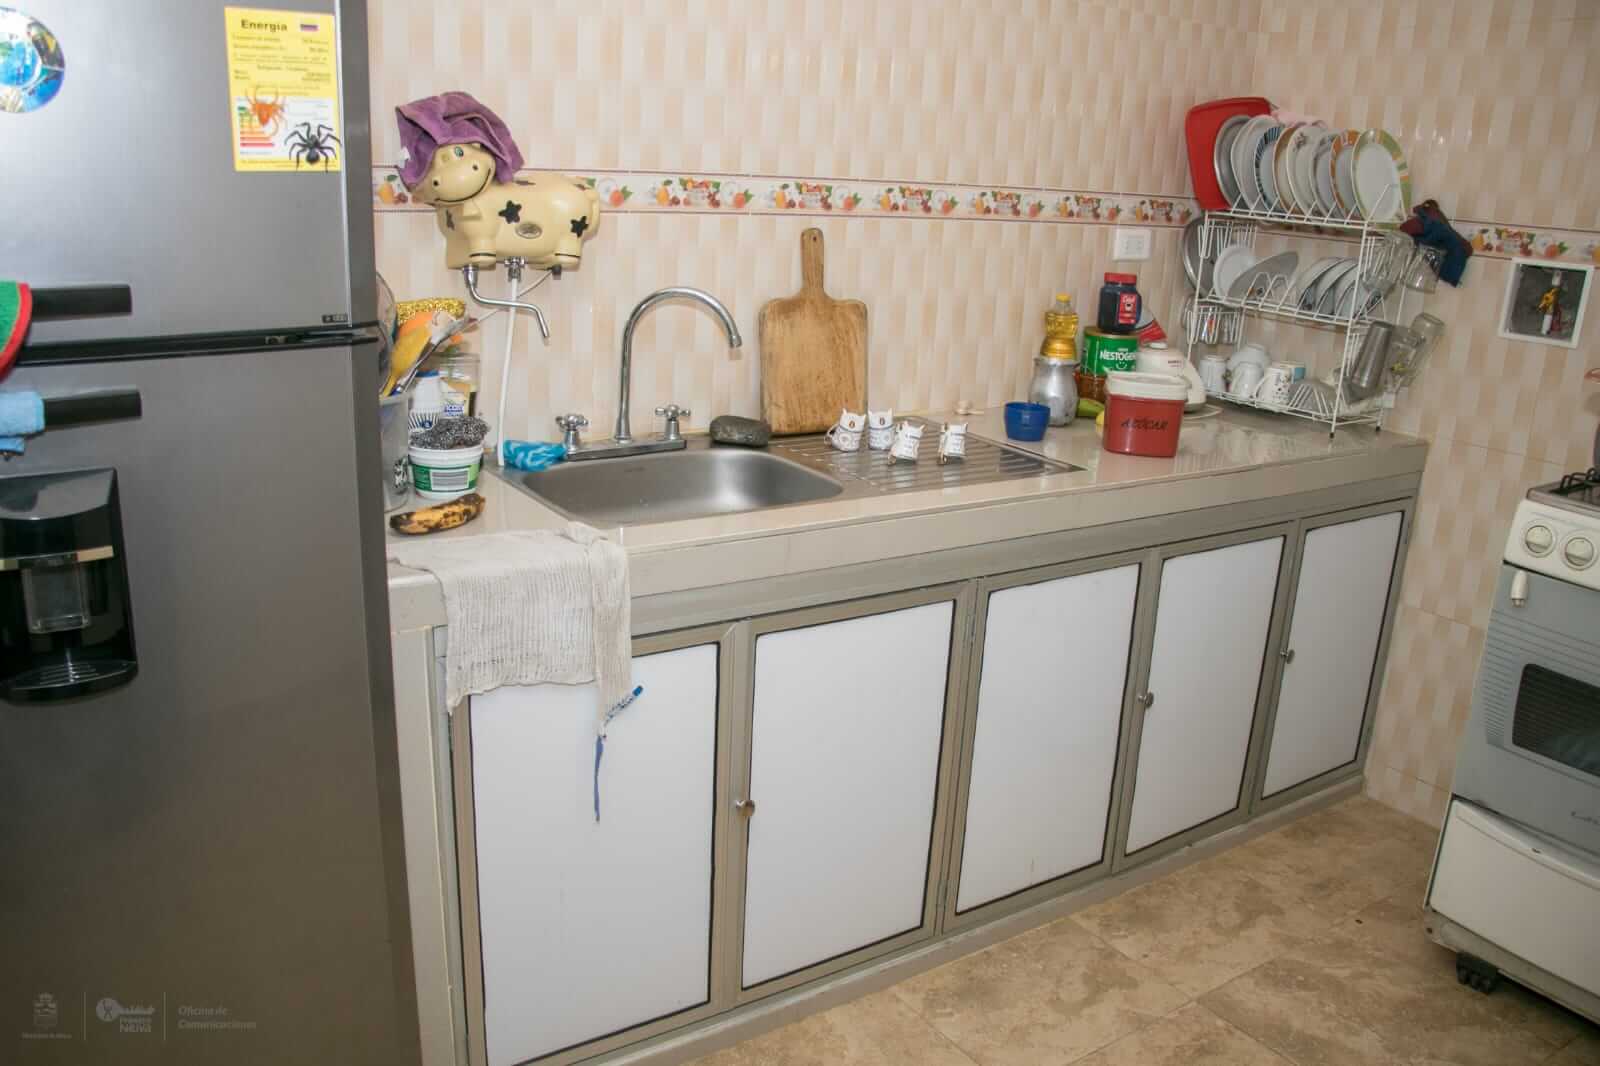 Una ‘vivienda digna’ mejoró la calidad de vida de más de 1.000 familias en Neiva